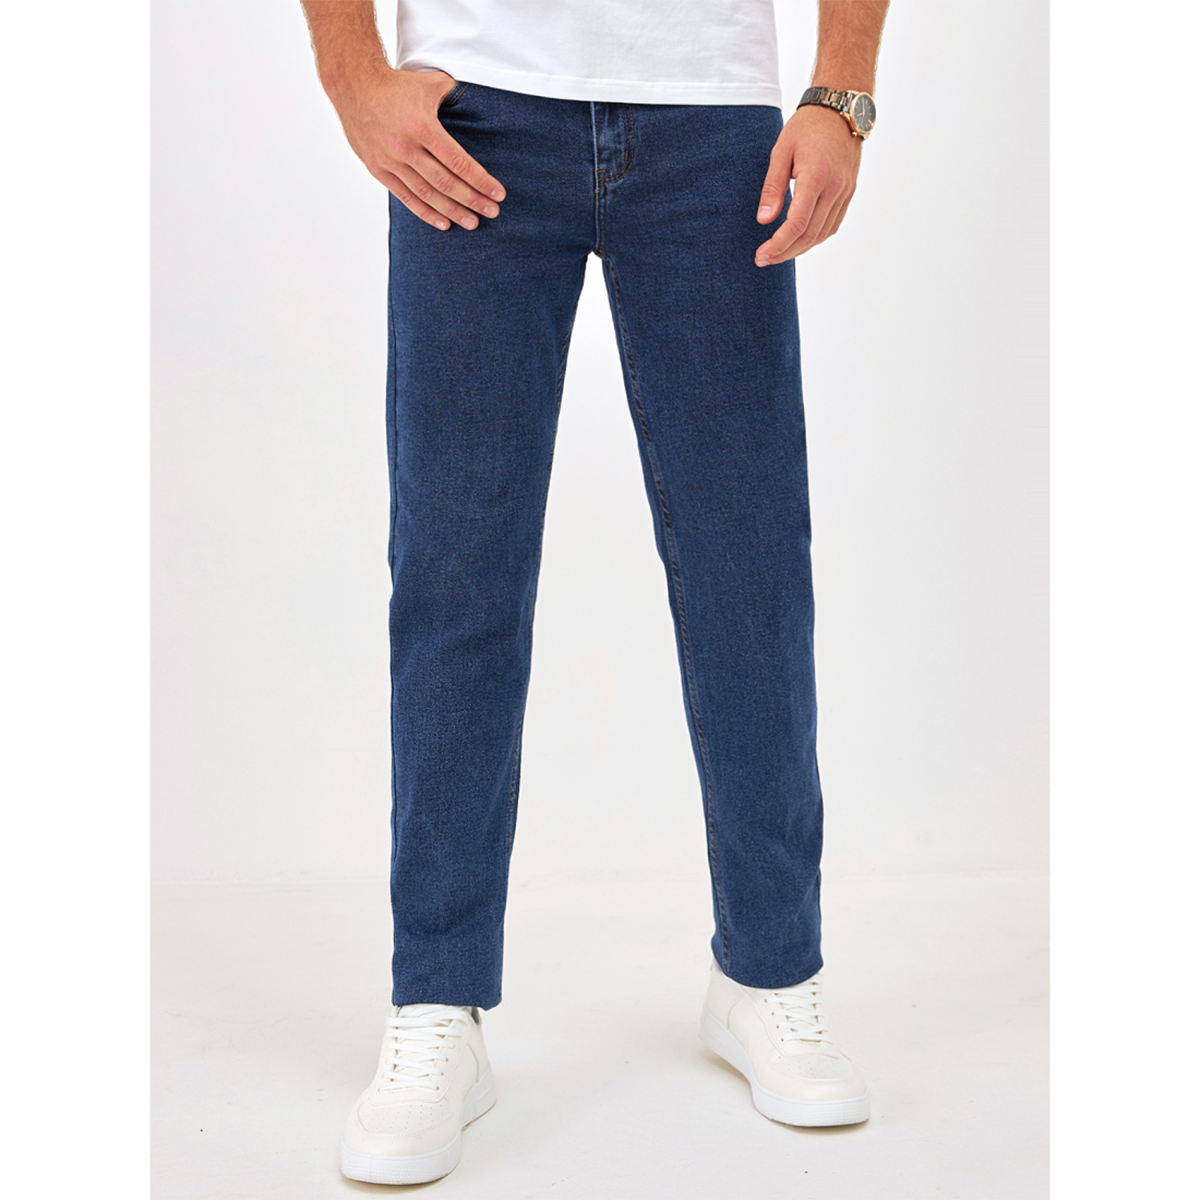 Джинсы мужские Barouz Jeans classic синие 34